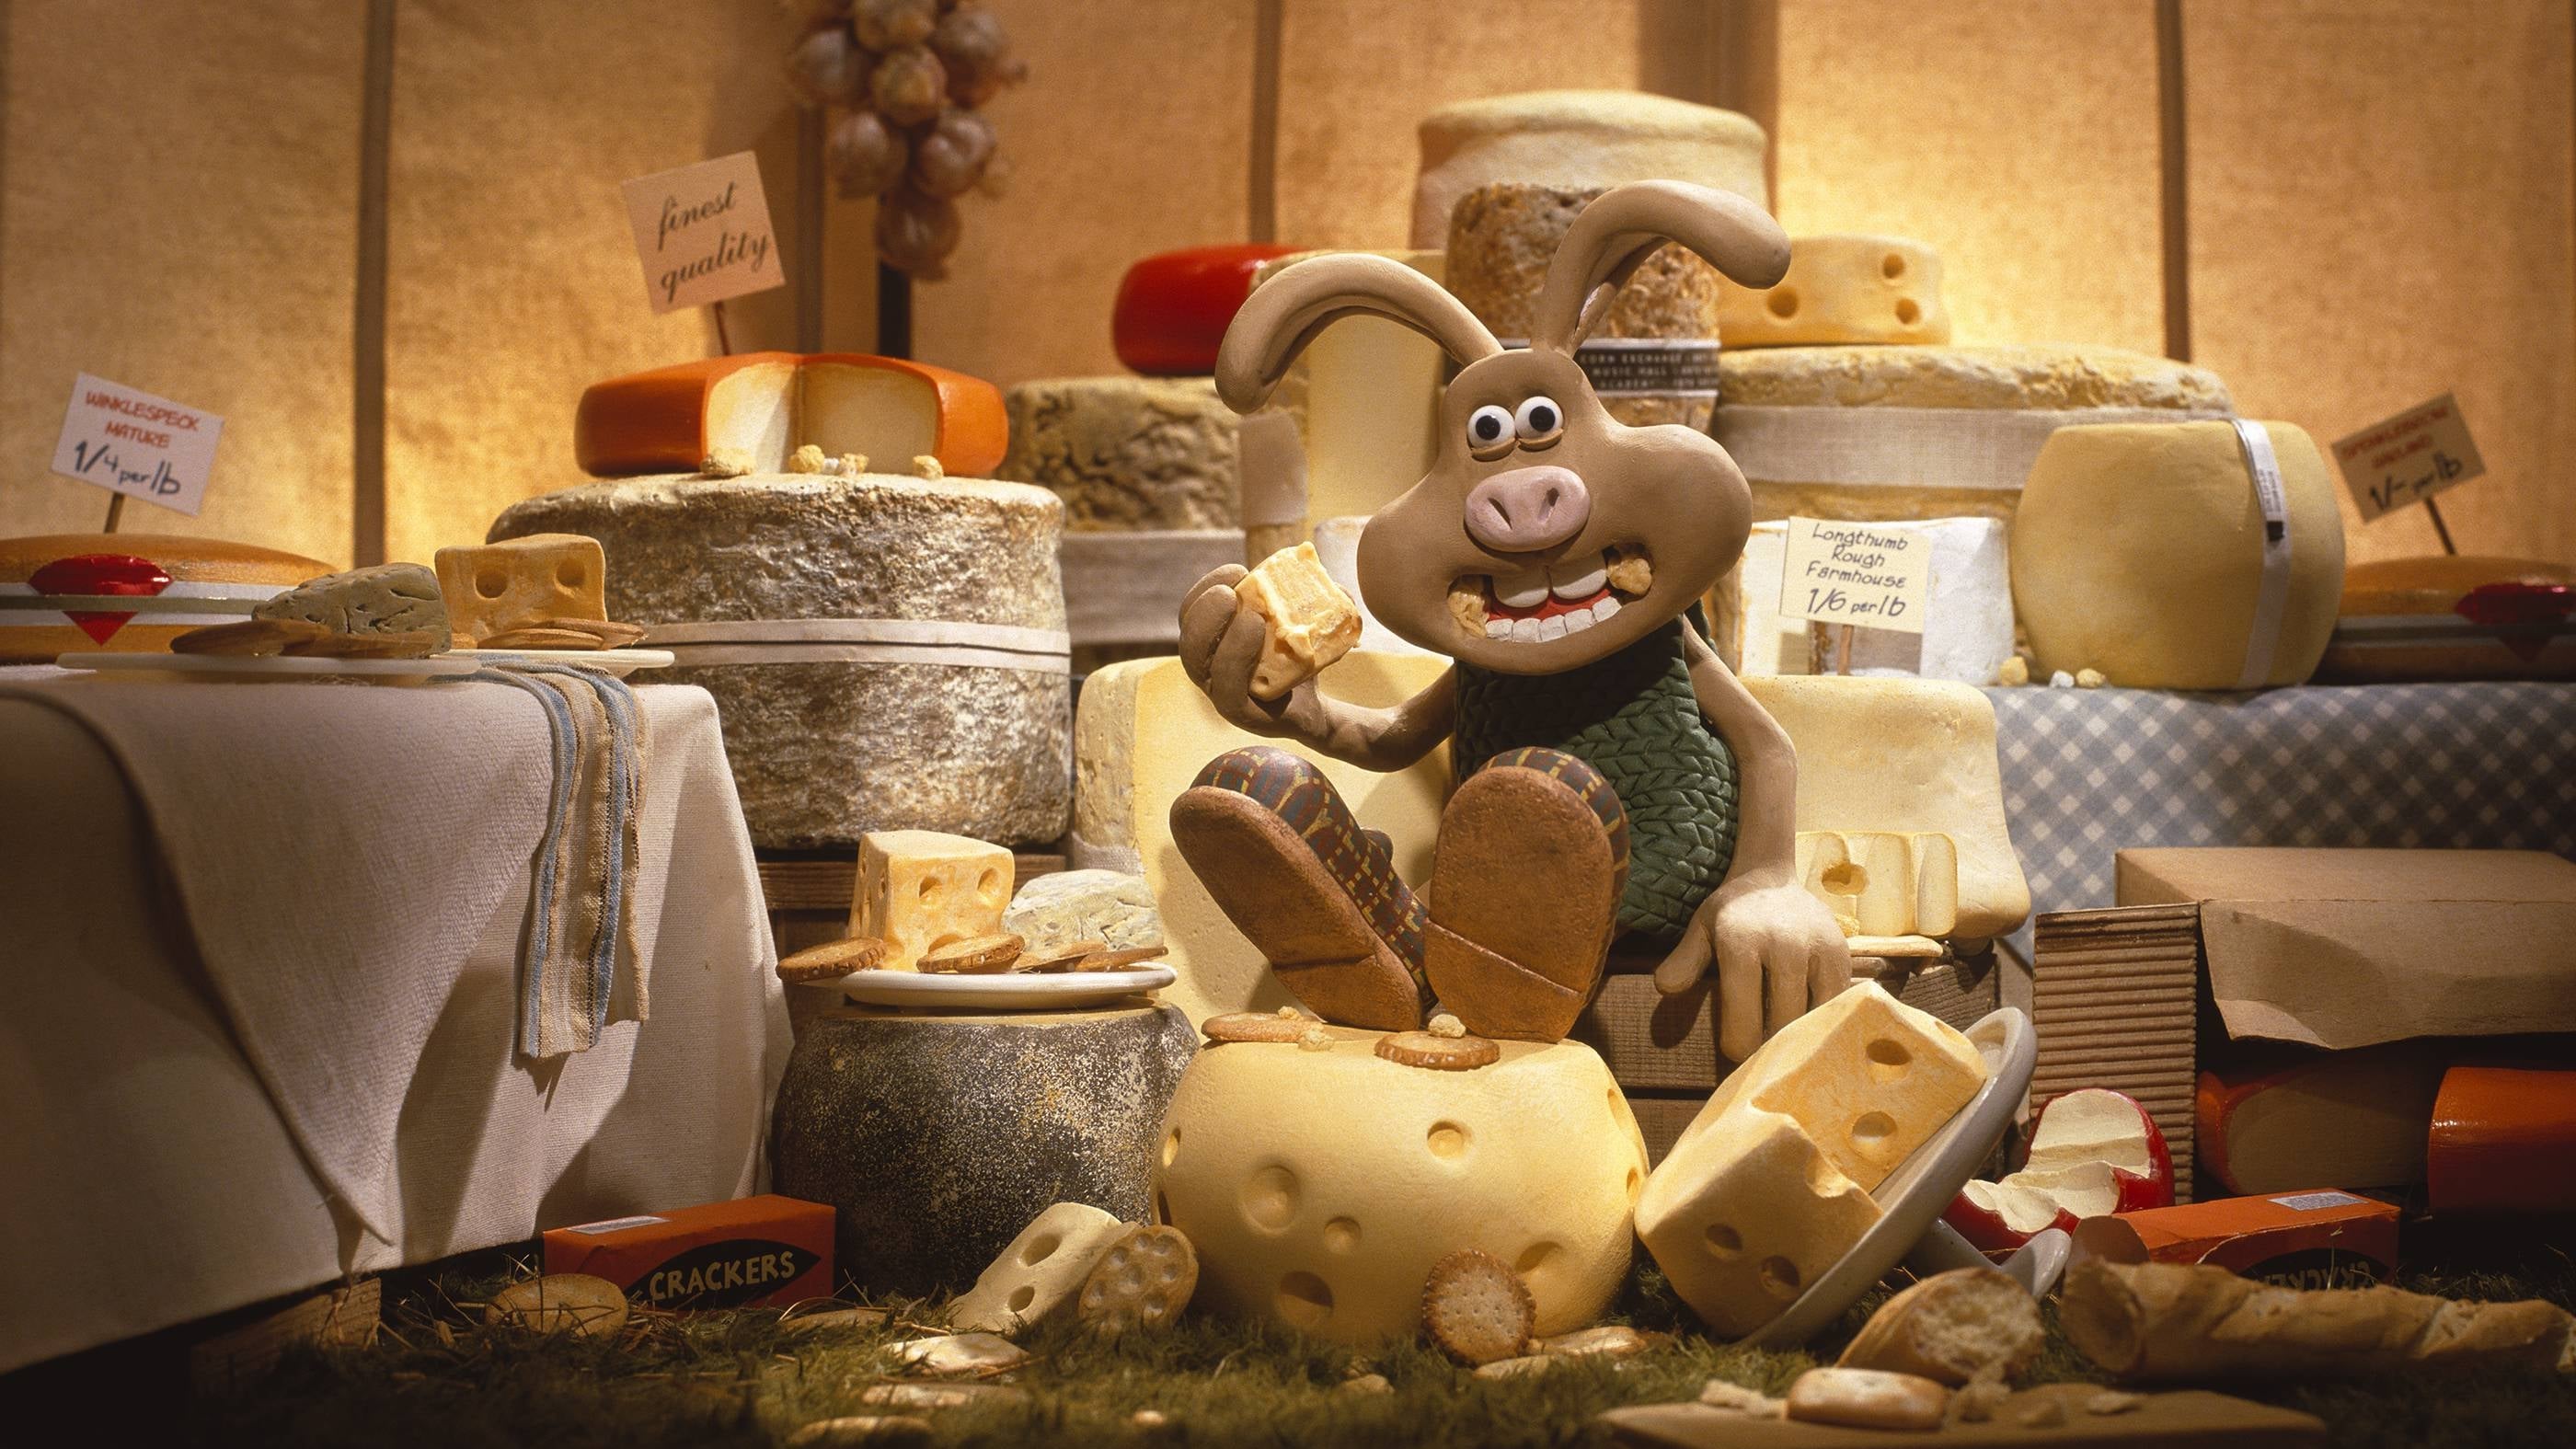 Wallace & Gromit: Kanin kirous (2005)